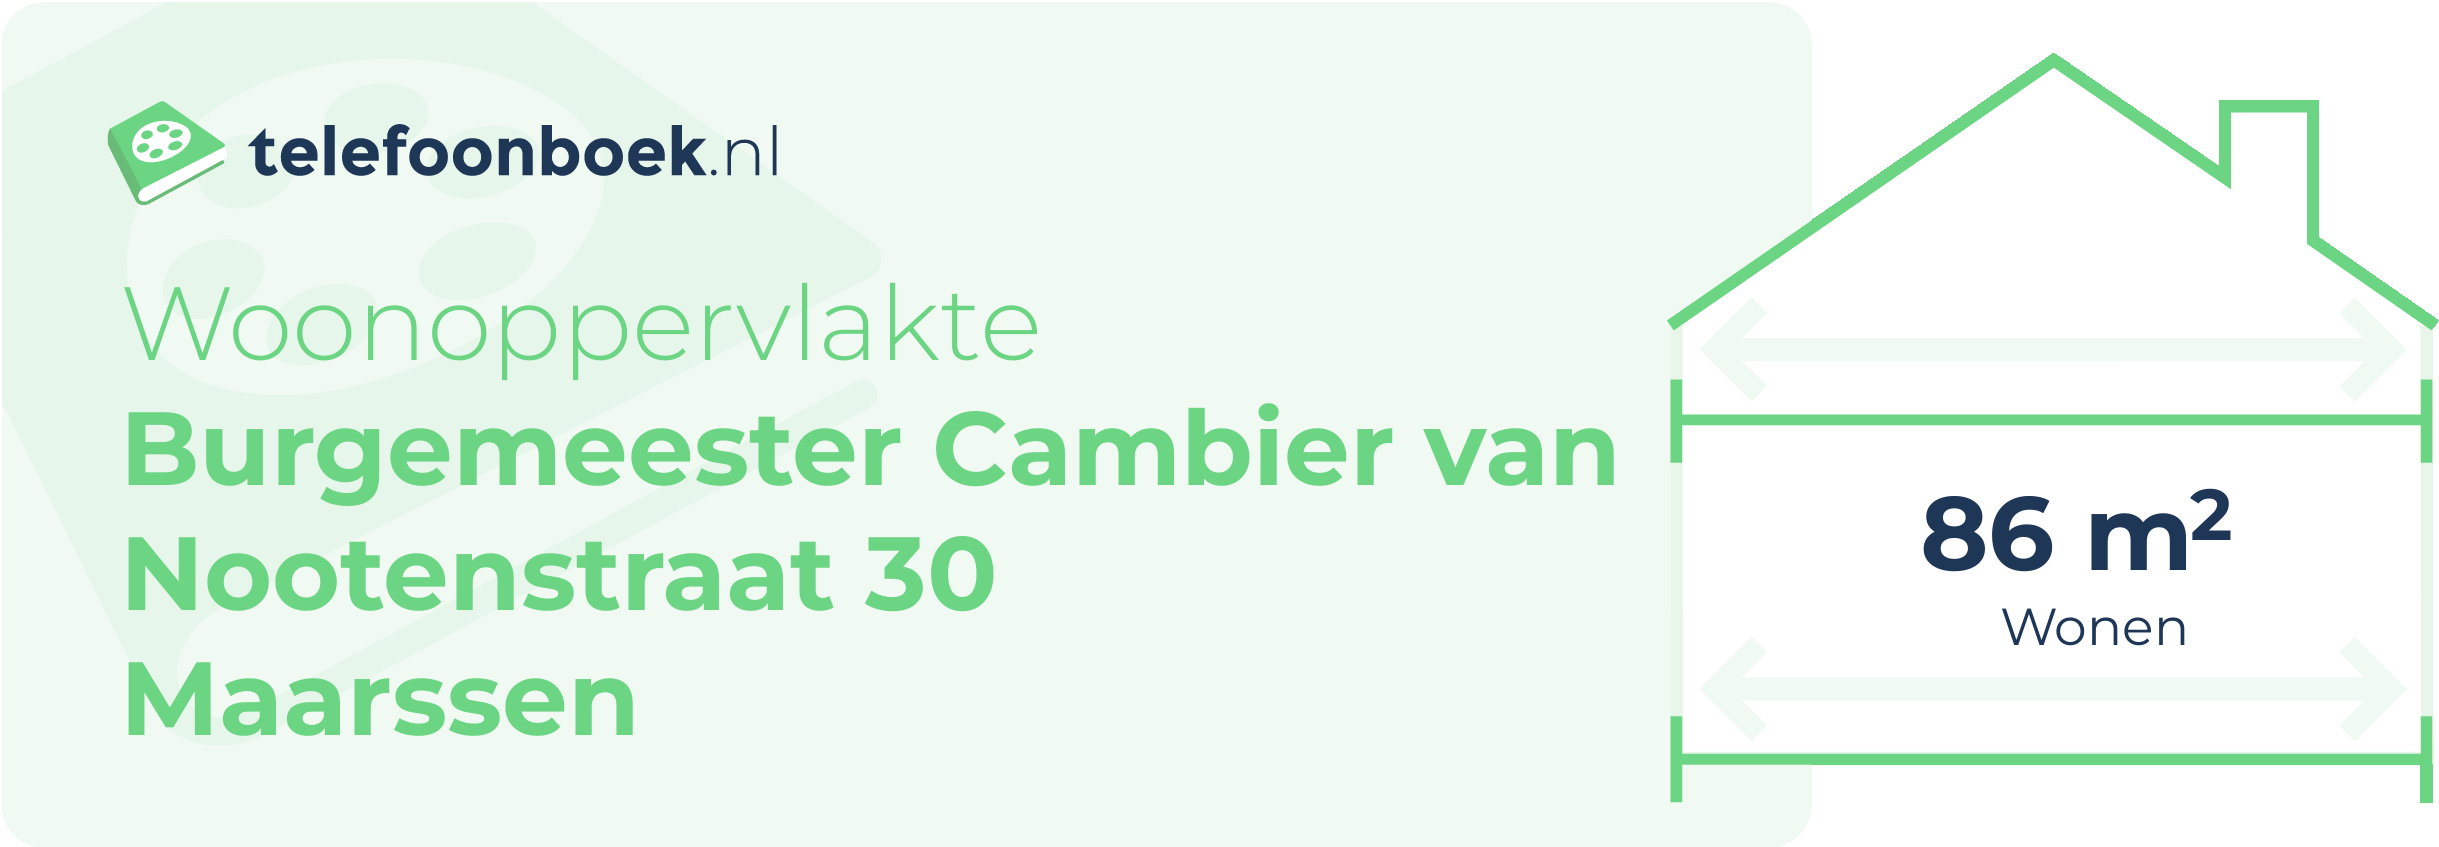 Woonoppervlakte Burgemeester Cambier Van Nootenstraat 30 Maarssen